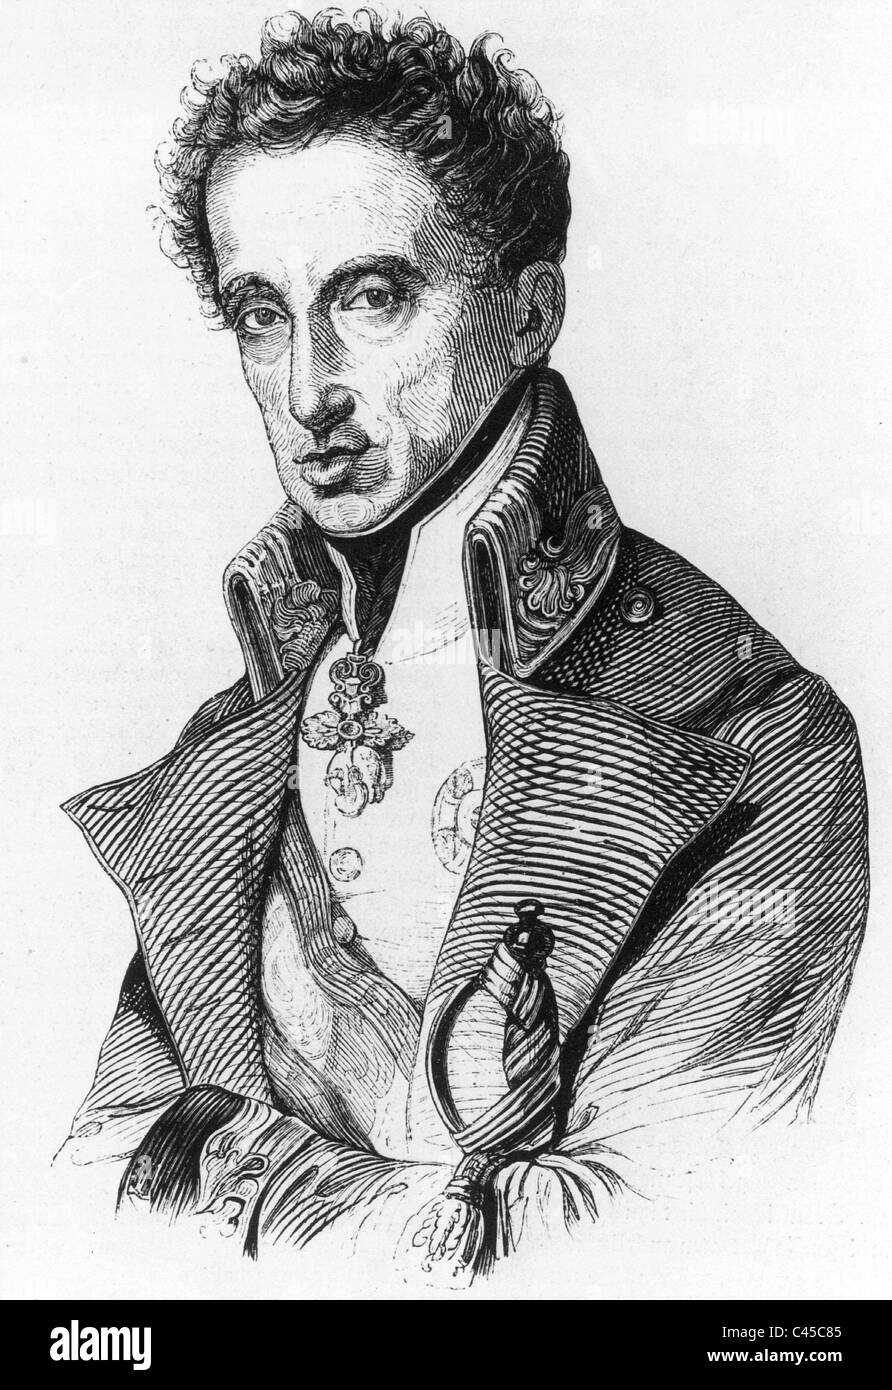 El archiduque Carlos de Austria (1771-1847) Foto de stock